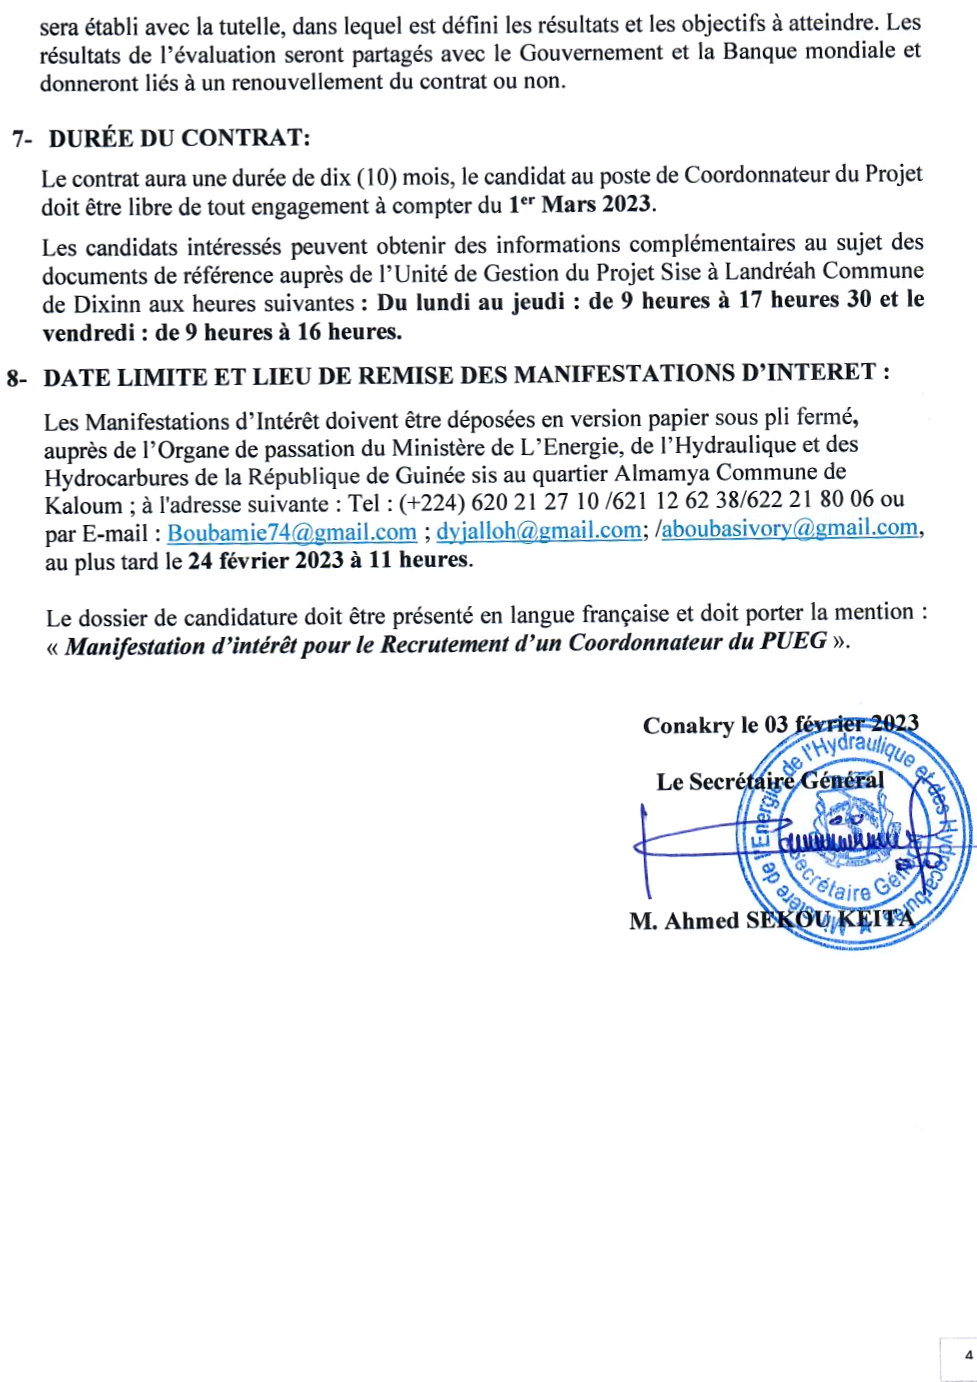 AVIS A MANIFESTATION D’INTERET POUR LE RECRUTEMENT D’UN COORDONNATEUR POUR LEPROJET URBAIN EAU DE GUINEE (PUEG) | Page 4